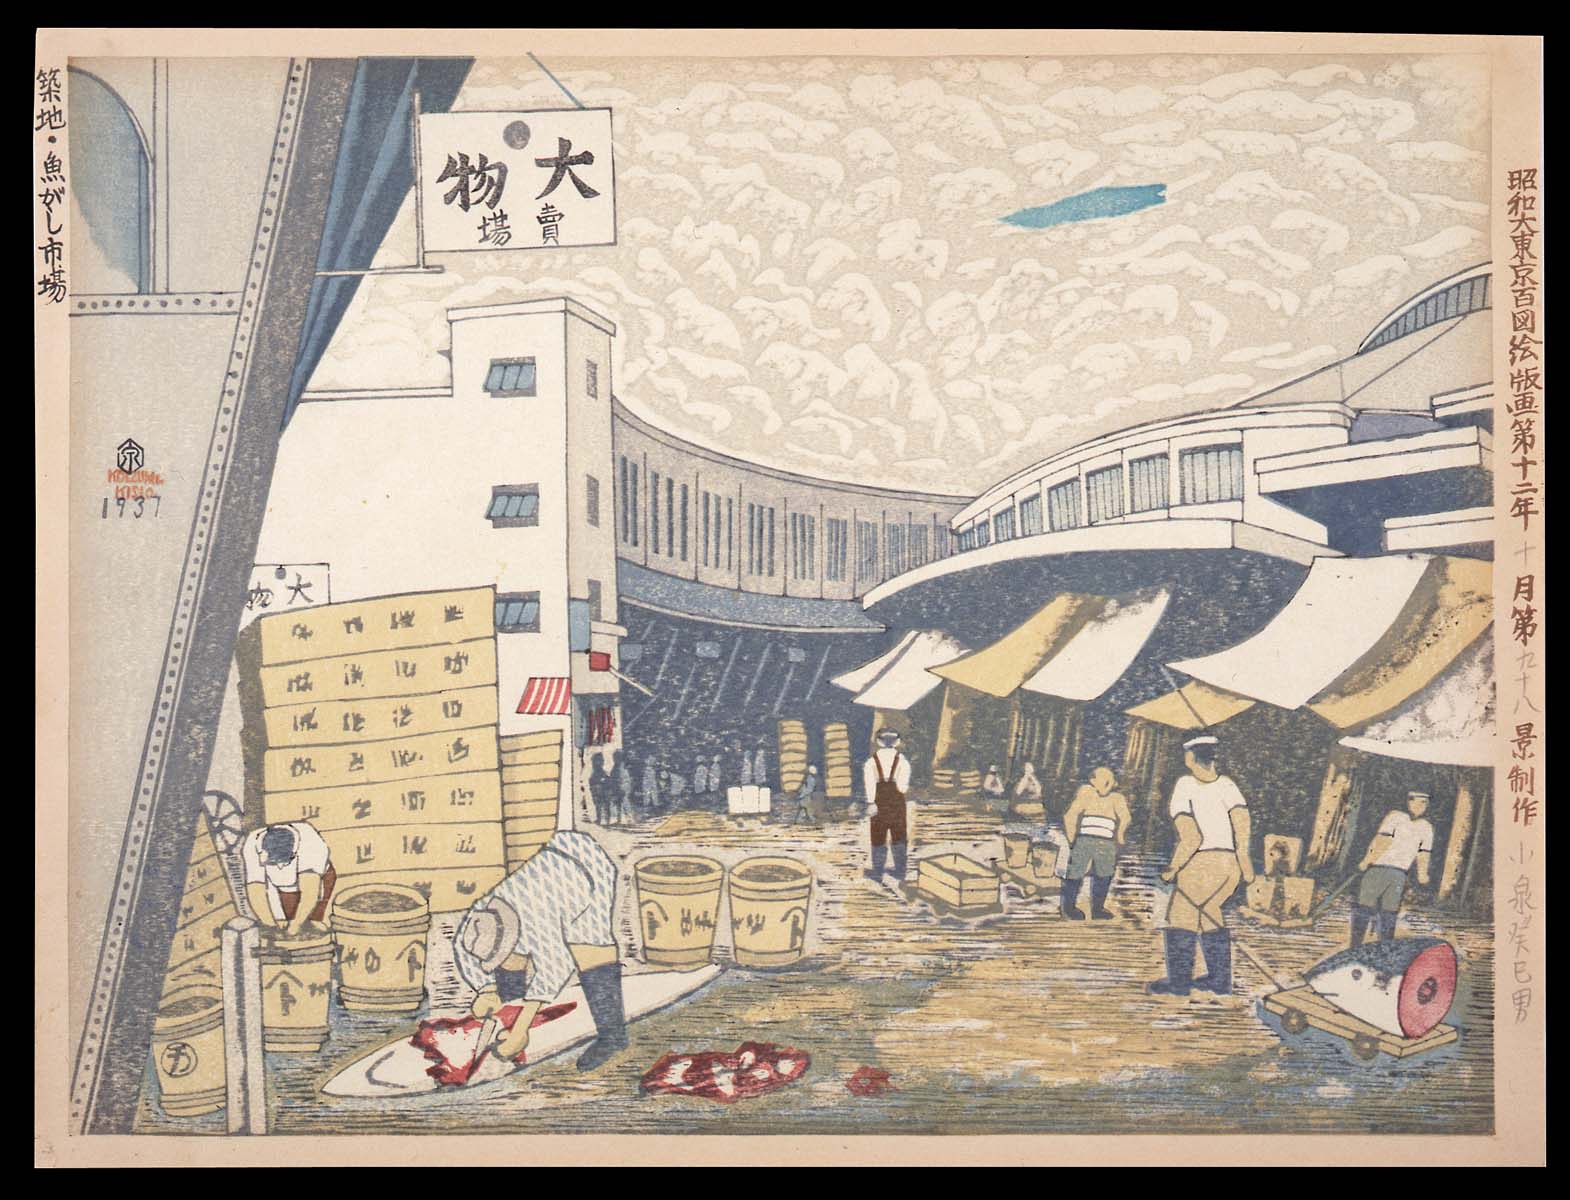 kk098et_1937_Tsukiji#311B9A